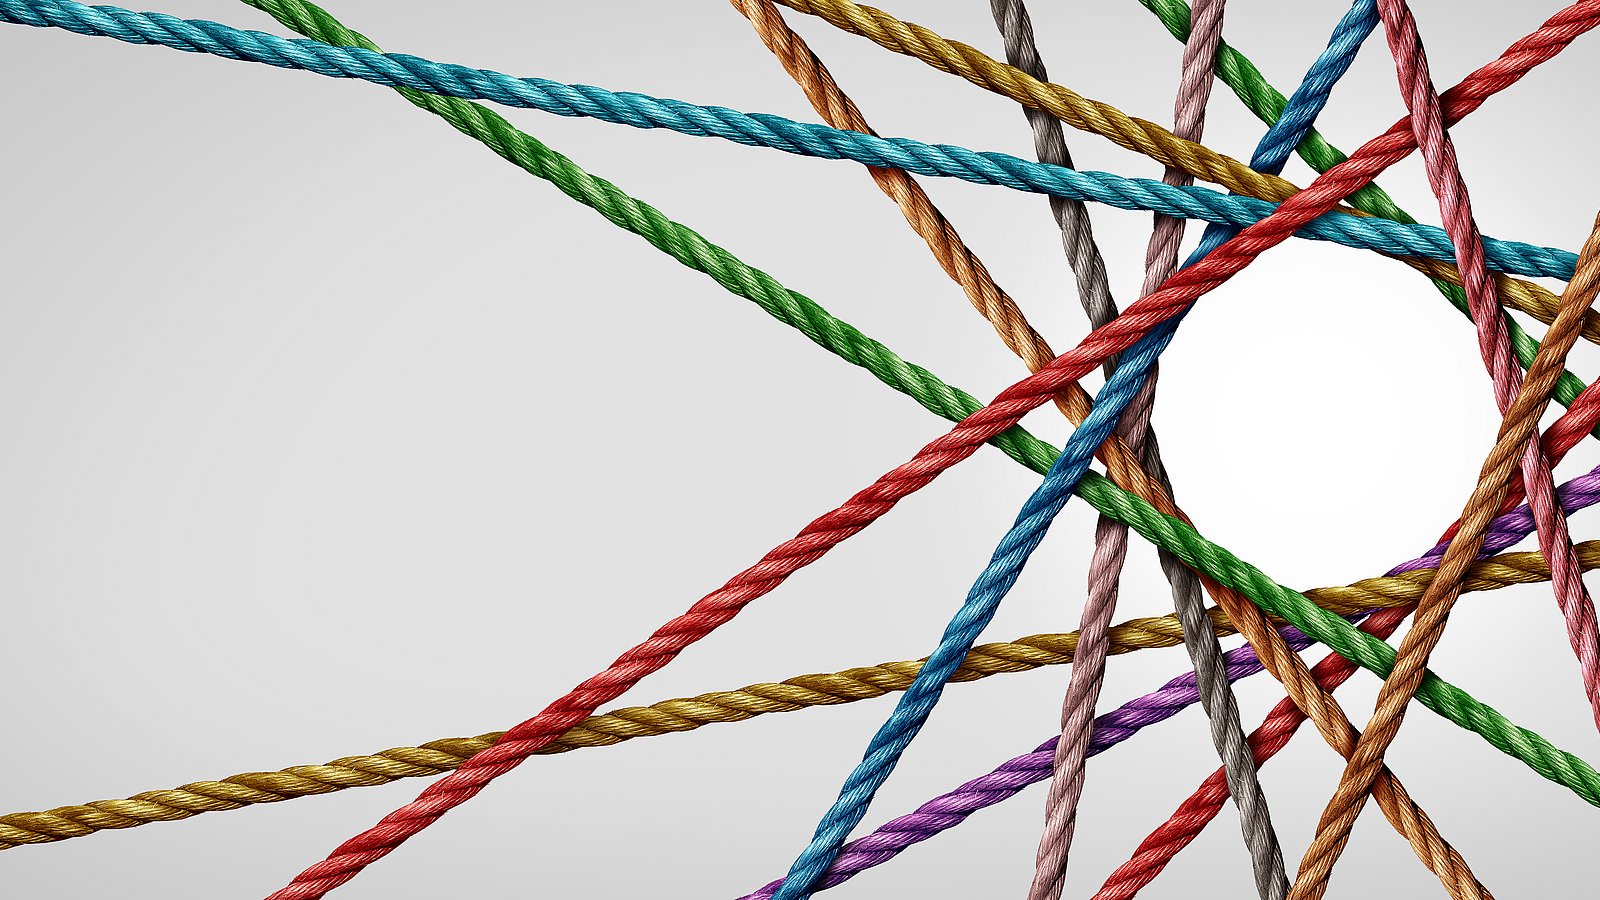 Bild zeigt gebundenes Netzwerk aus Seilen